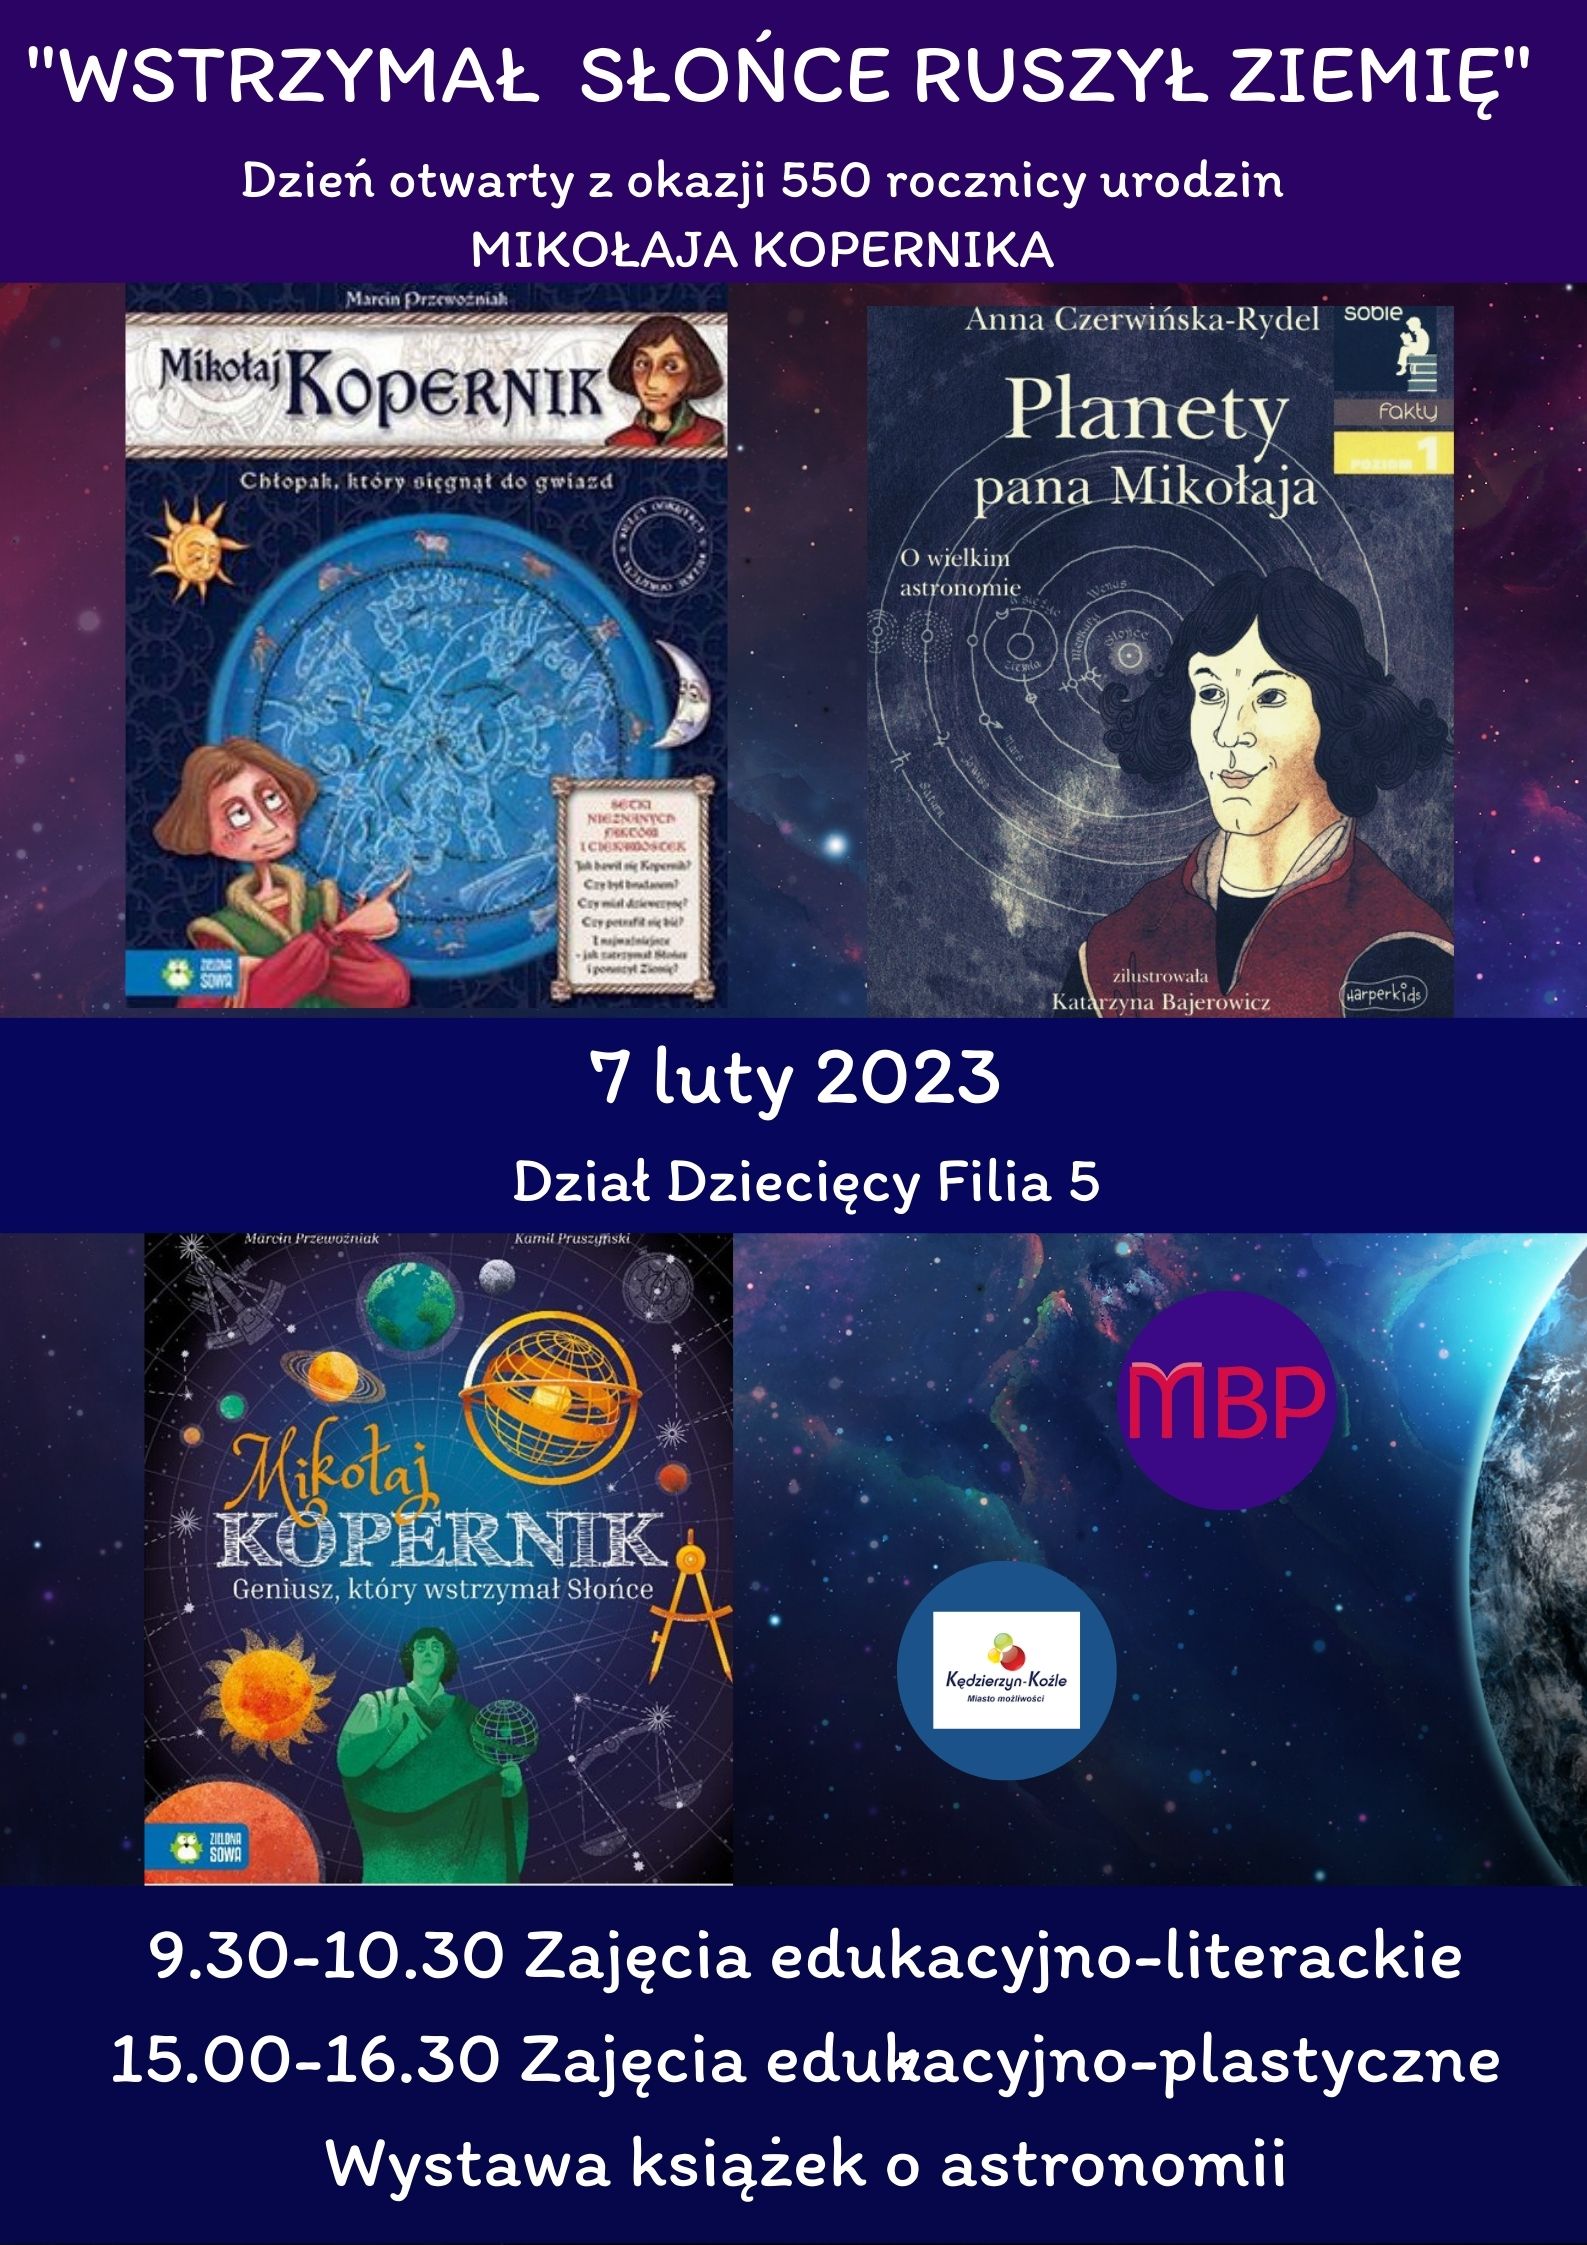 19 lutego 1473 urodził się w Toruniu jeden z największych uczonych w historii astronomii - Mikołaj Kopernik. Z tej okazji serdecznie zapraszamy na DZIEŃ OTWARTY ph. "Wstrzymał słońce ruszył ziemię". 7 lutego o godz. 15:00 w Dziale Dziecięcym Filii nr 5 (ul. Damrota 32) będzie czekać na najmłodszych czytelników sporo atrakcji: ciekawe zajęcia, warsztaty plastyczne, wystawa książek o astronomii i piękne kosmiczne zakładki.